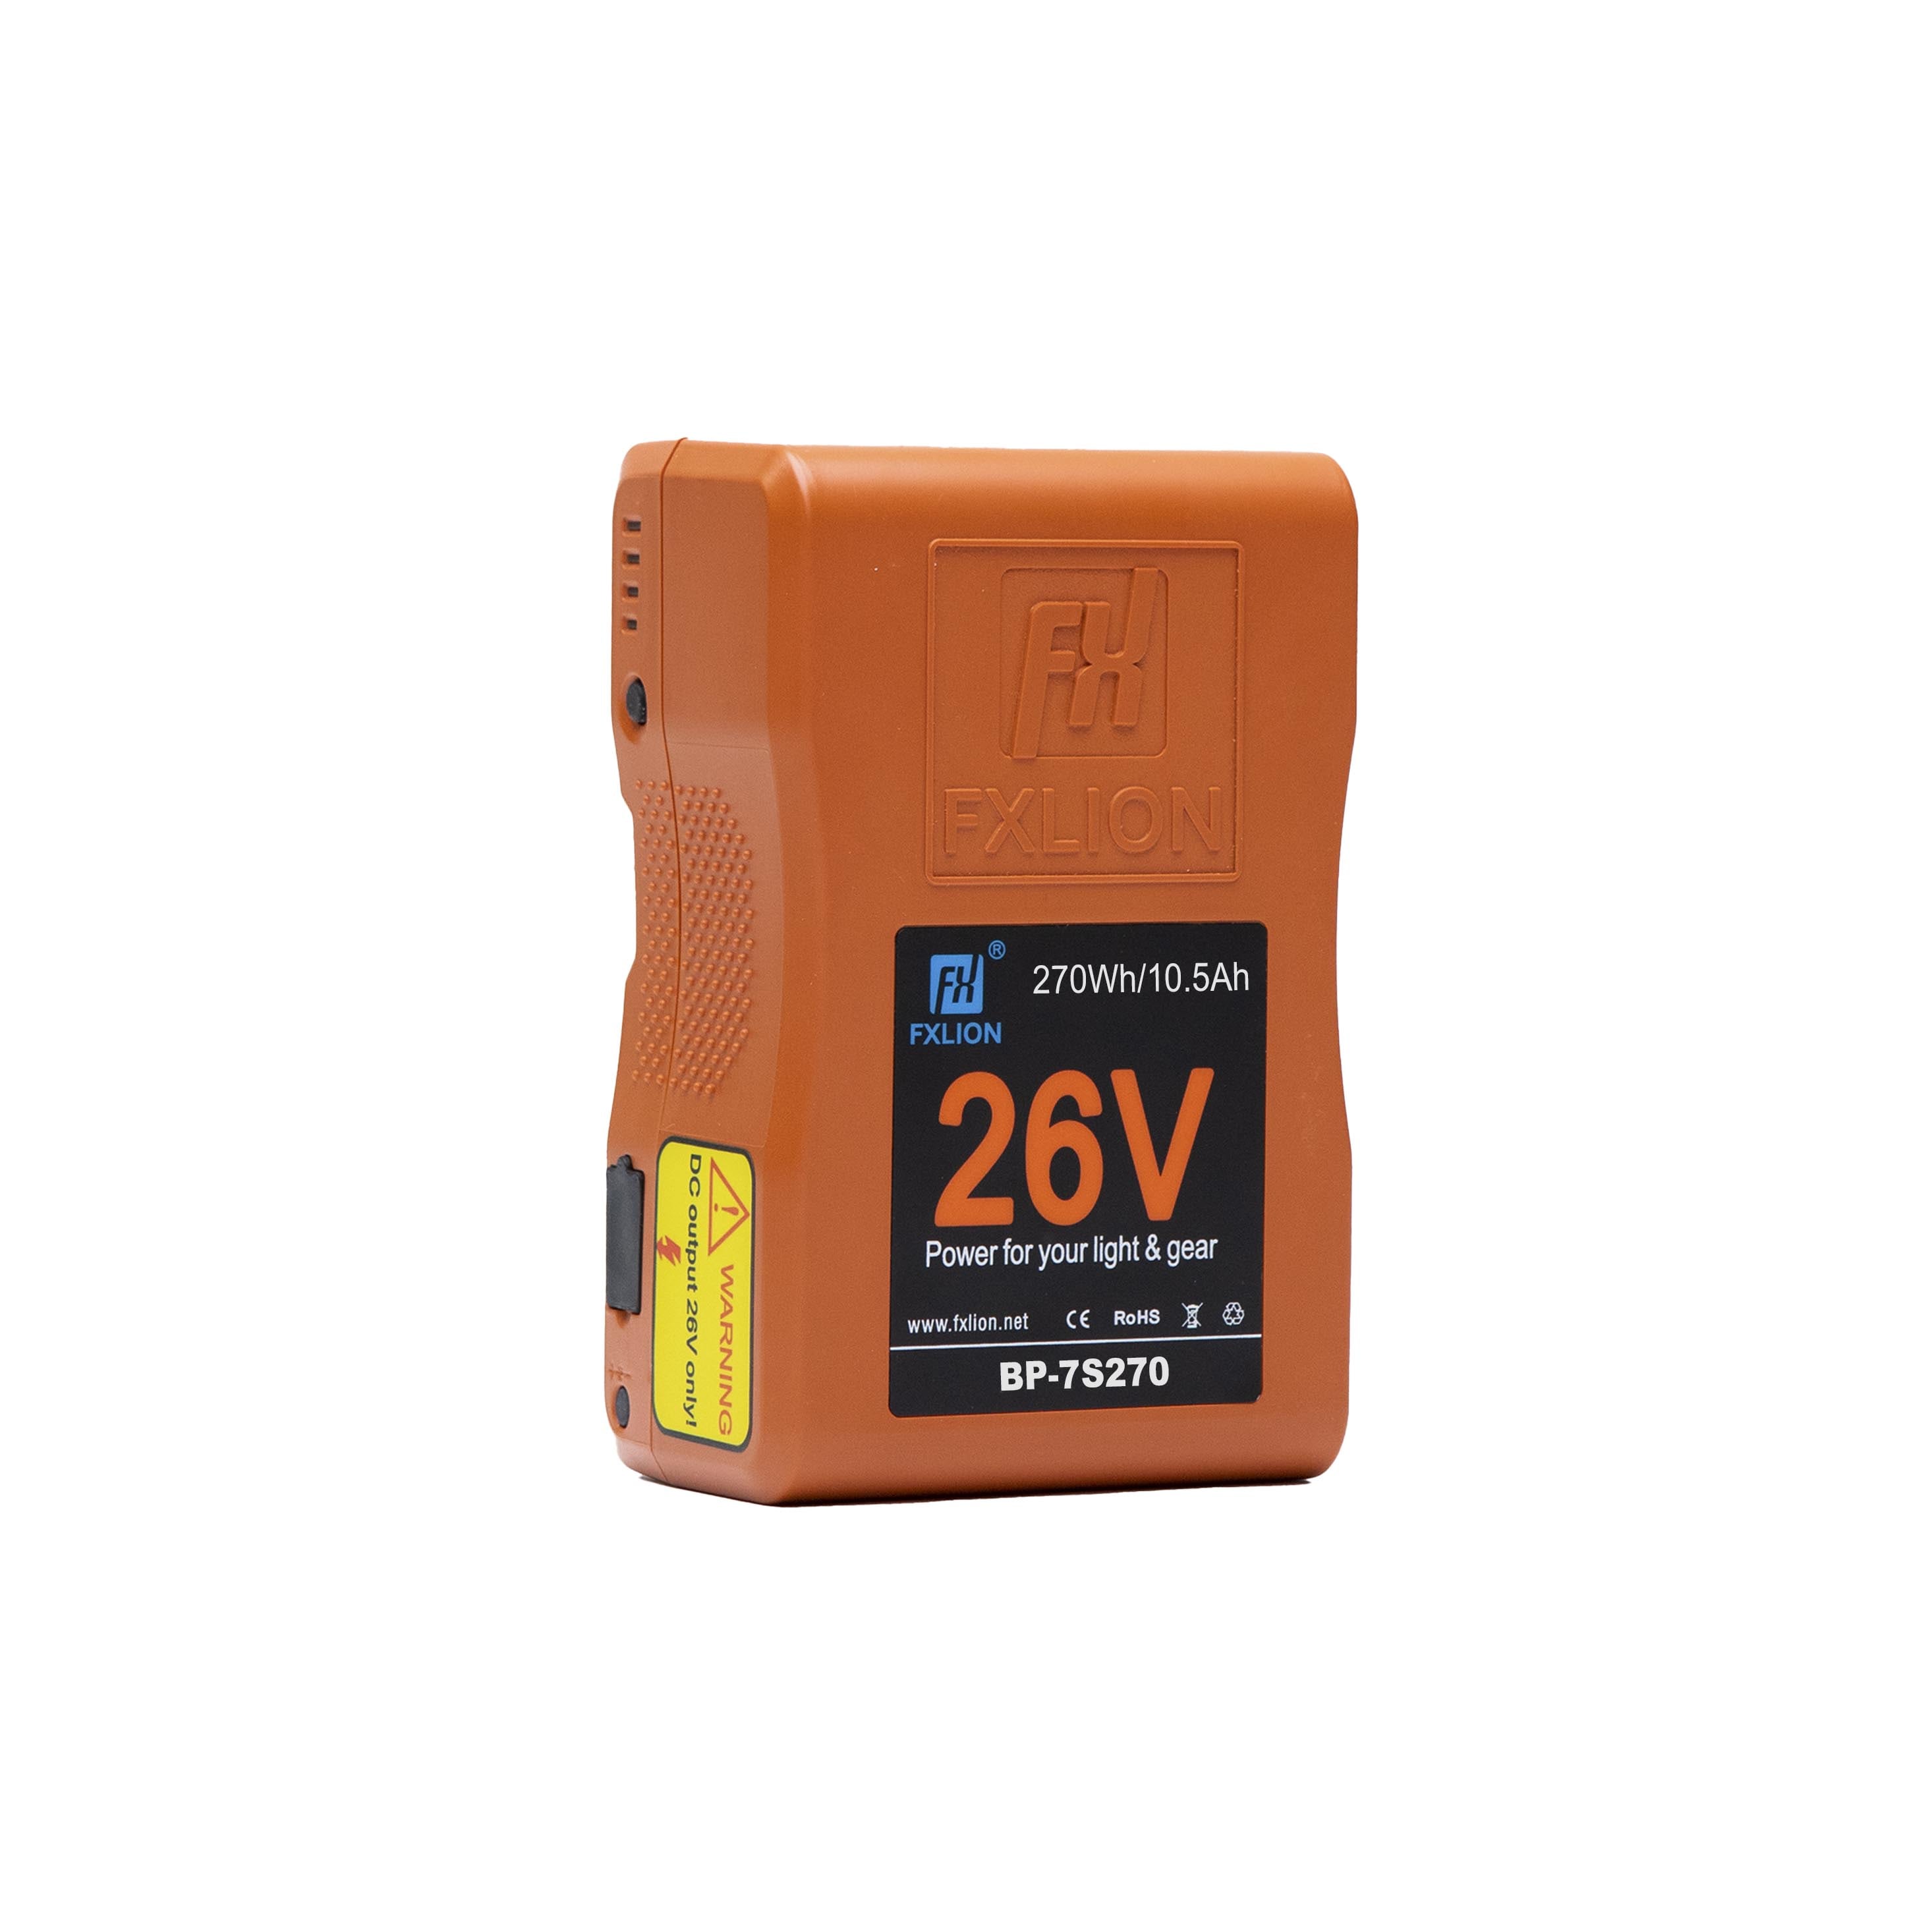 26V Battery - 26V / 270Wh V-Mount Battery